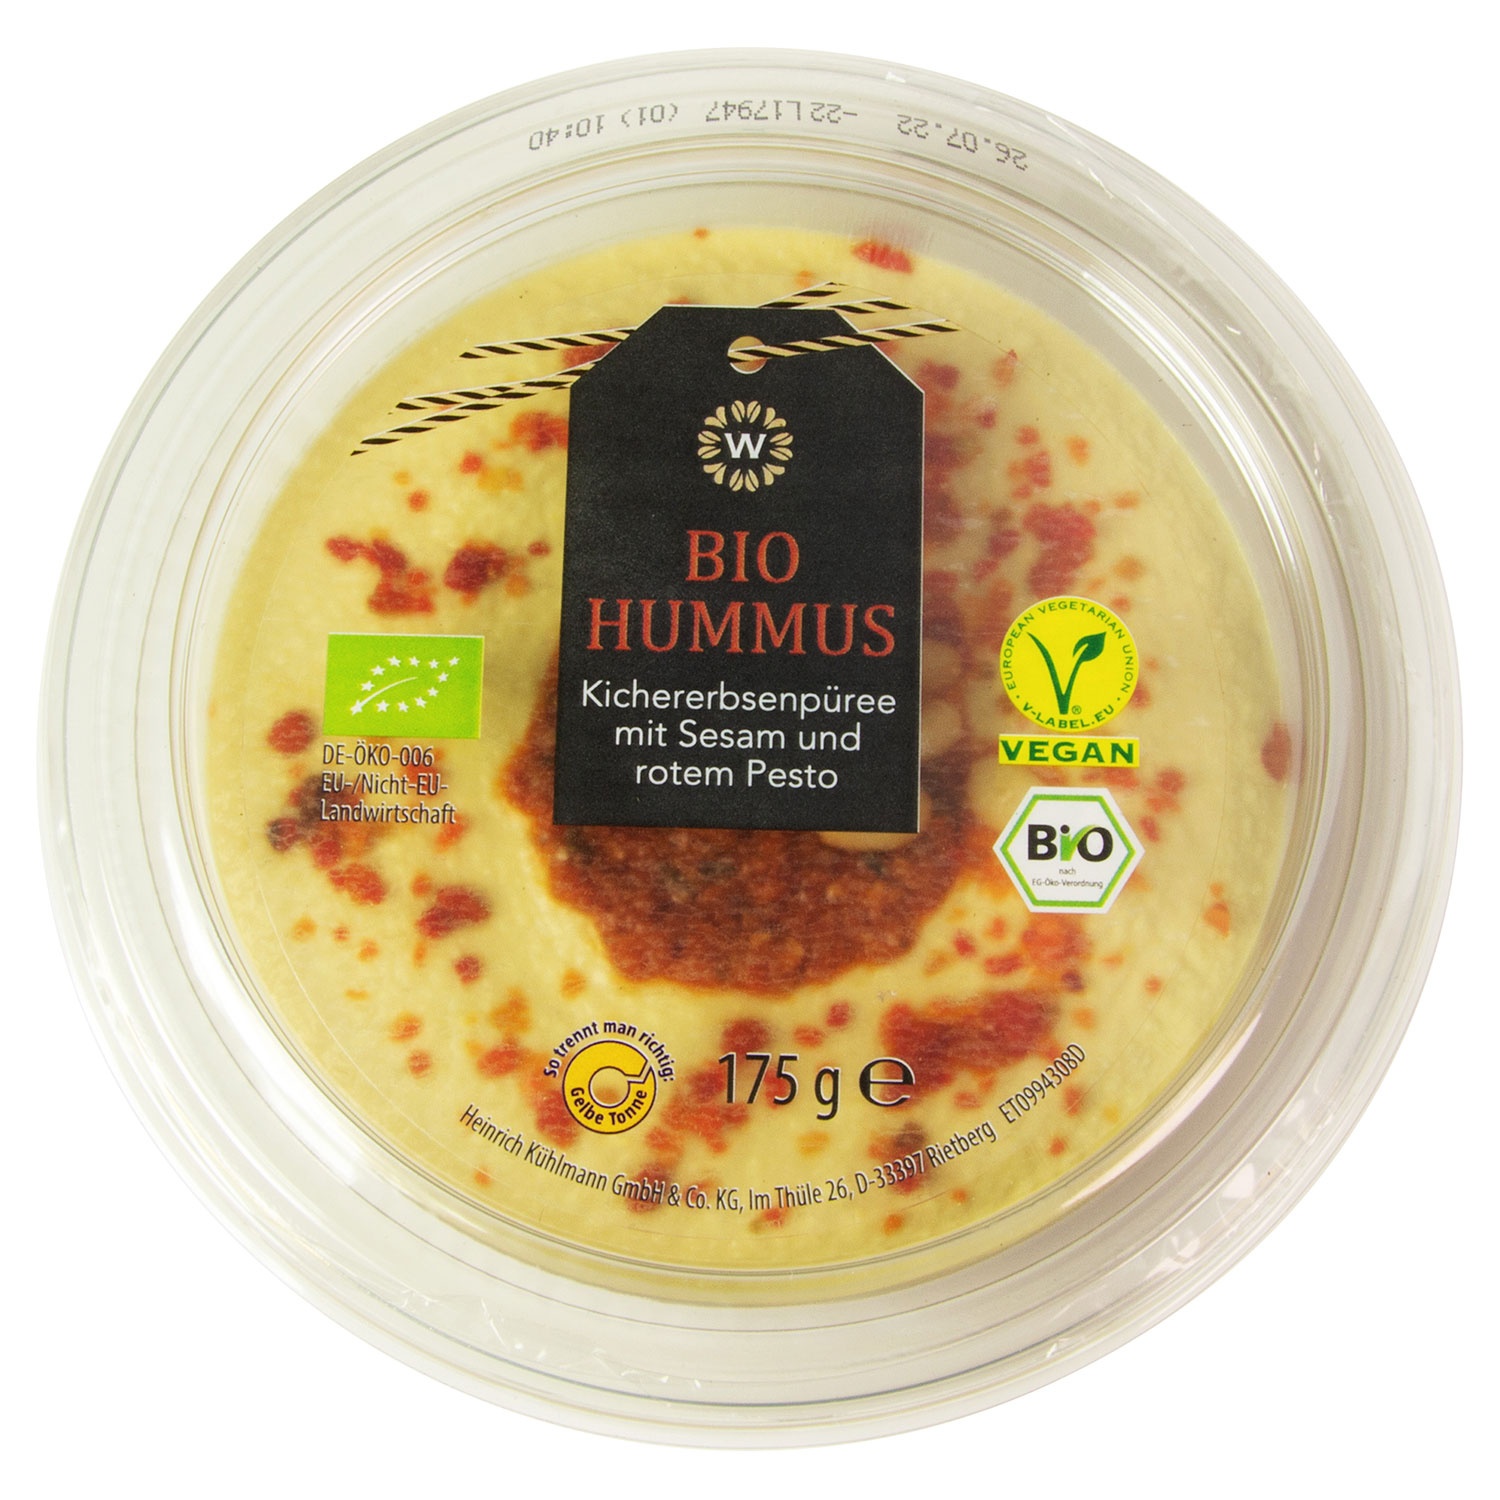 WONNEMEYER Bio-Hummus mit Topping 175 g